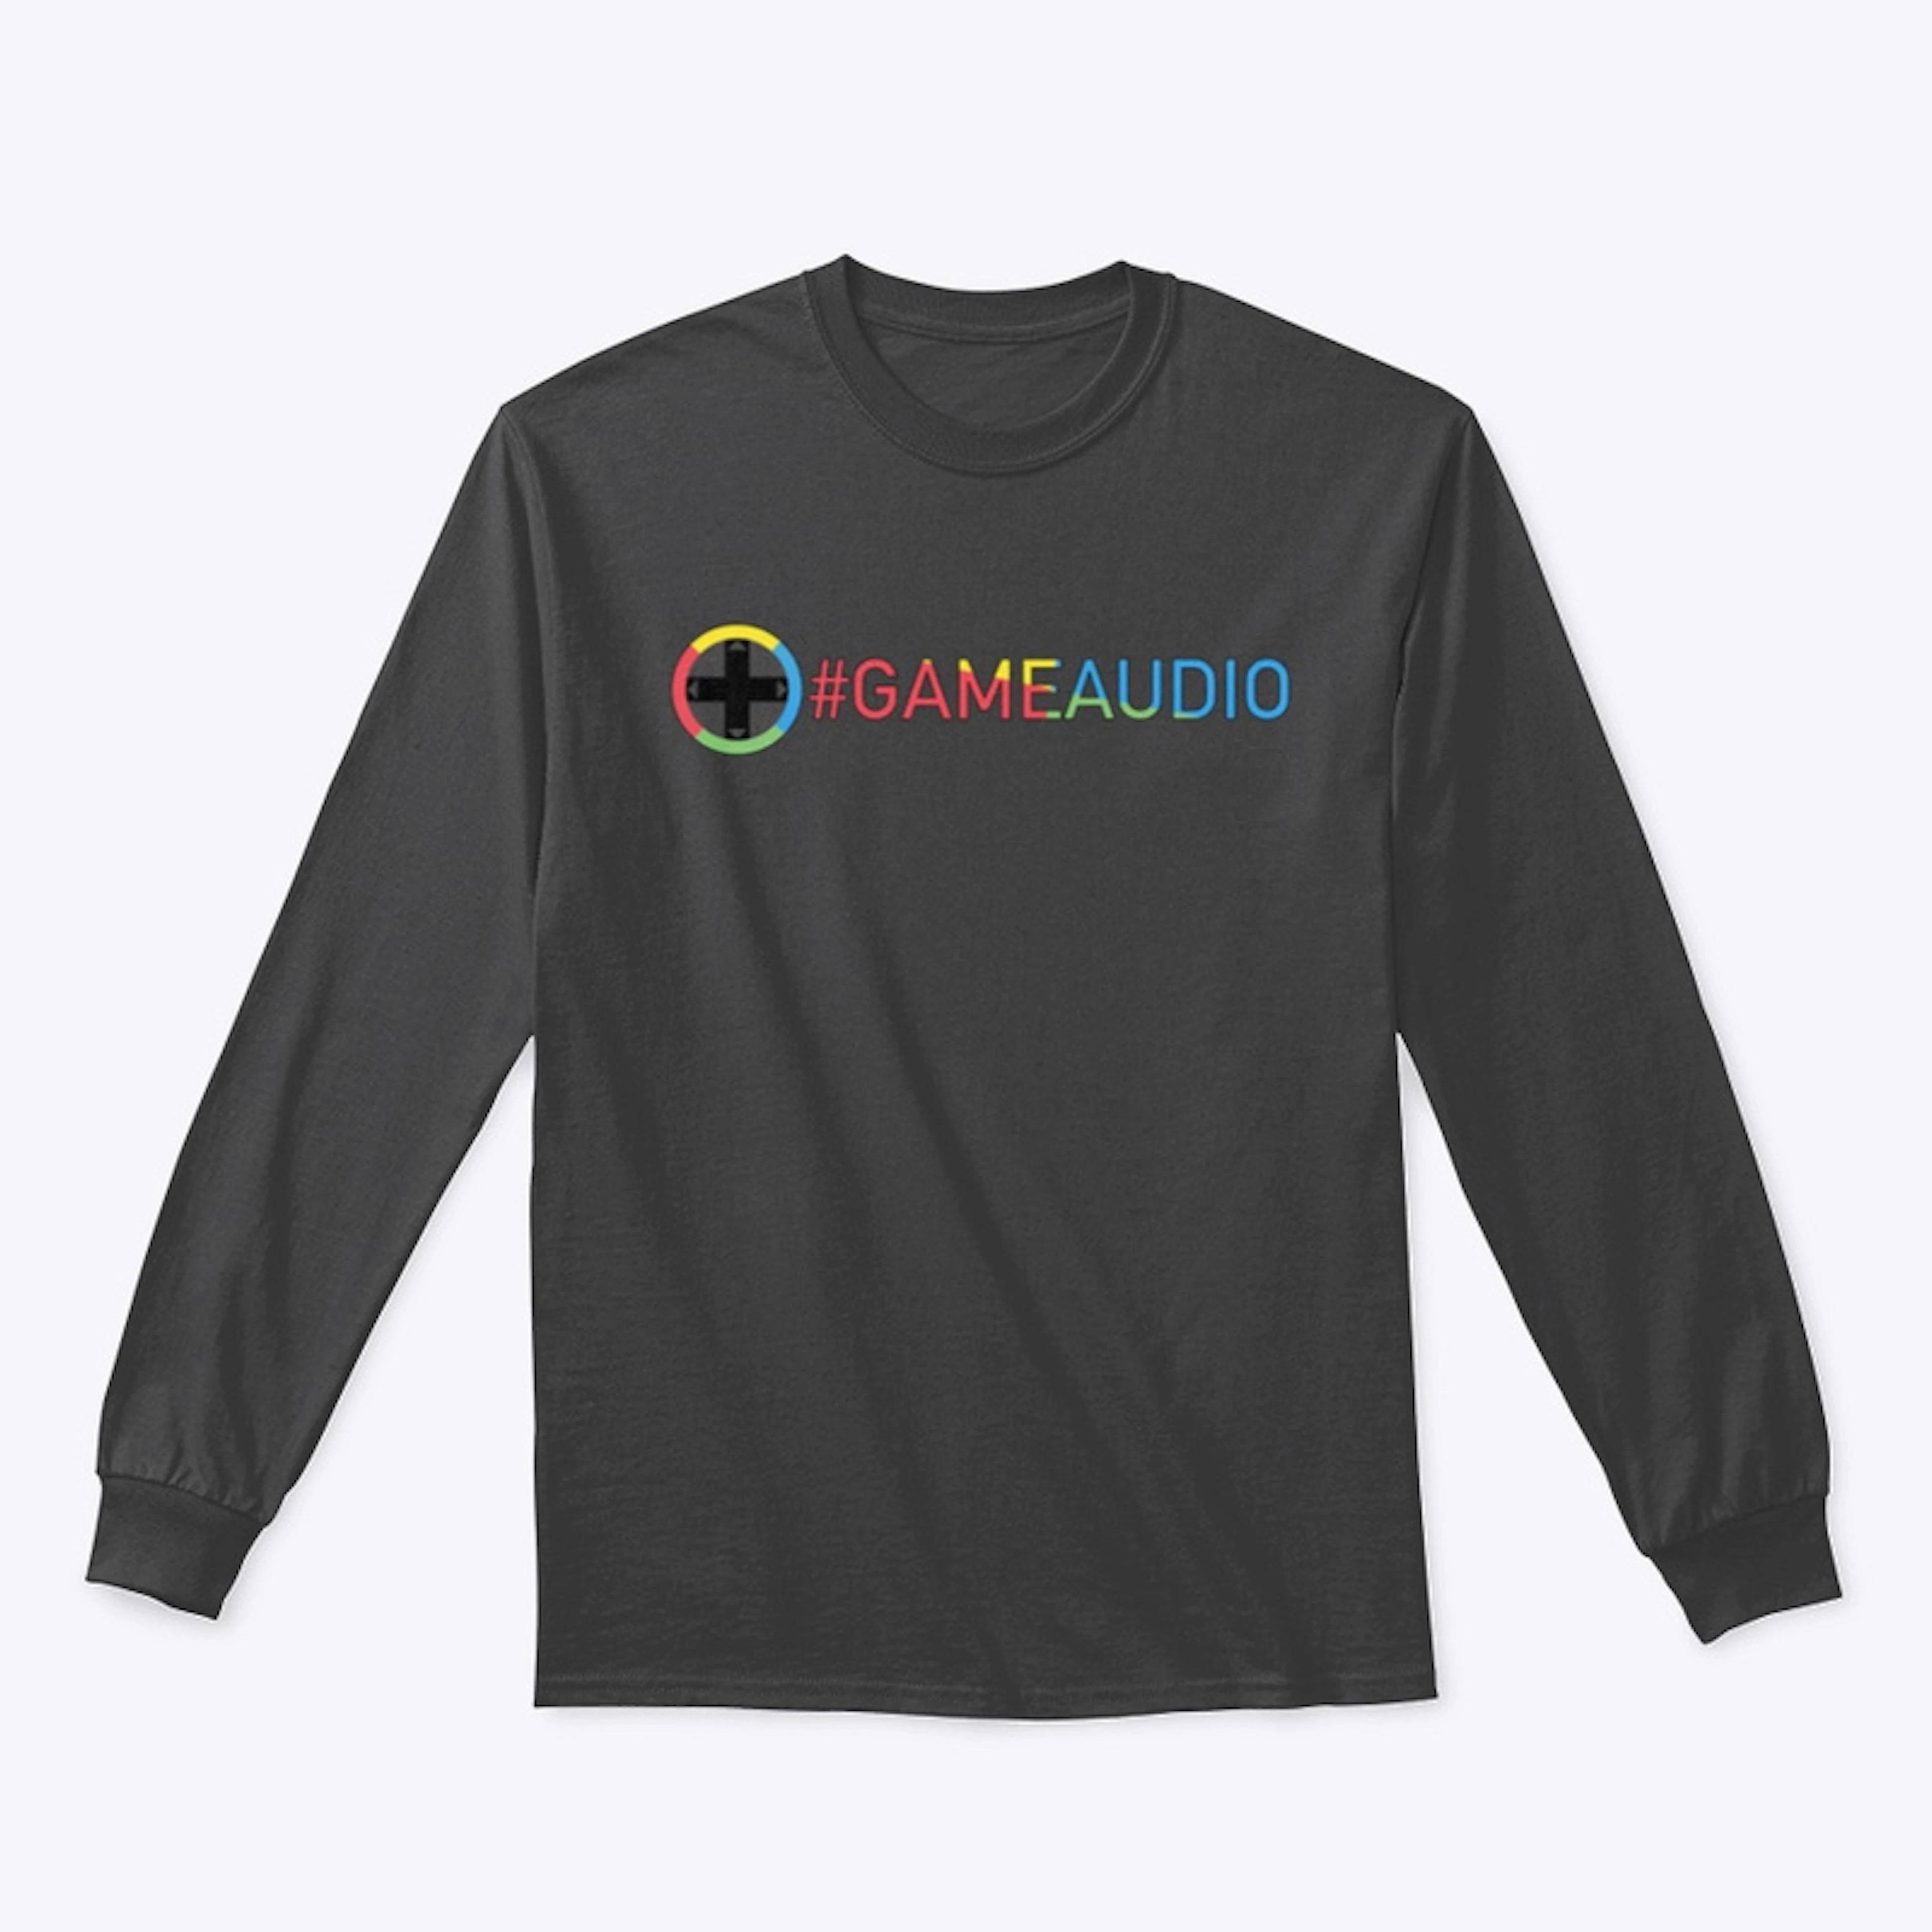 Game Audio